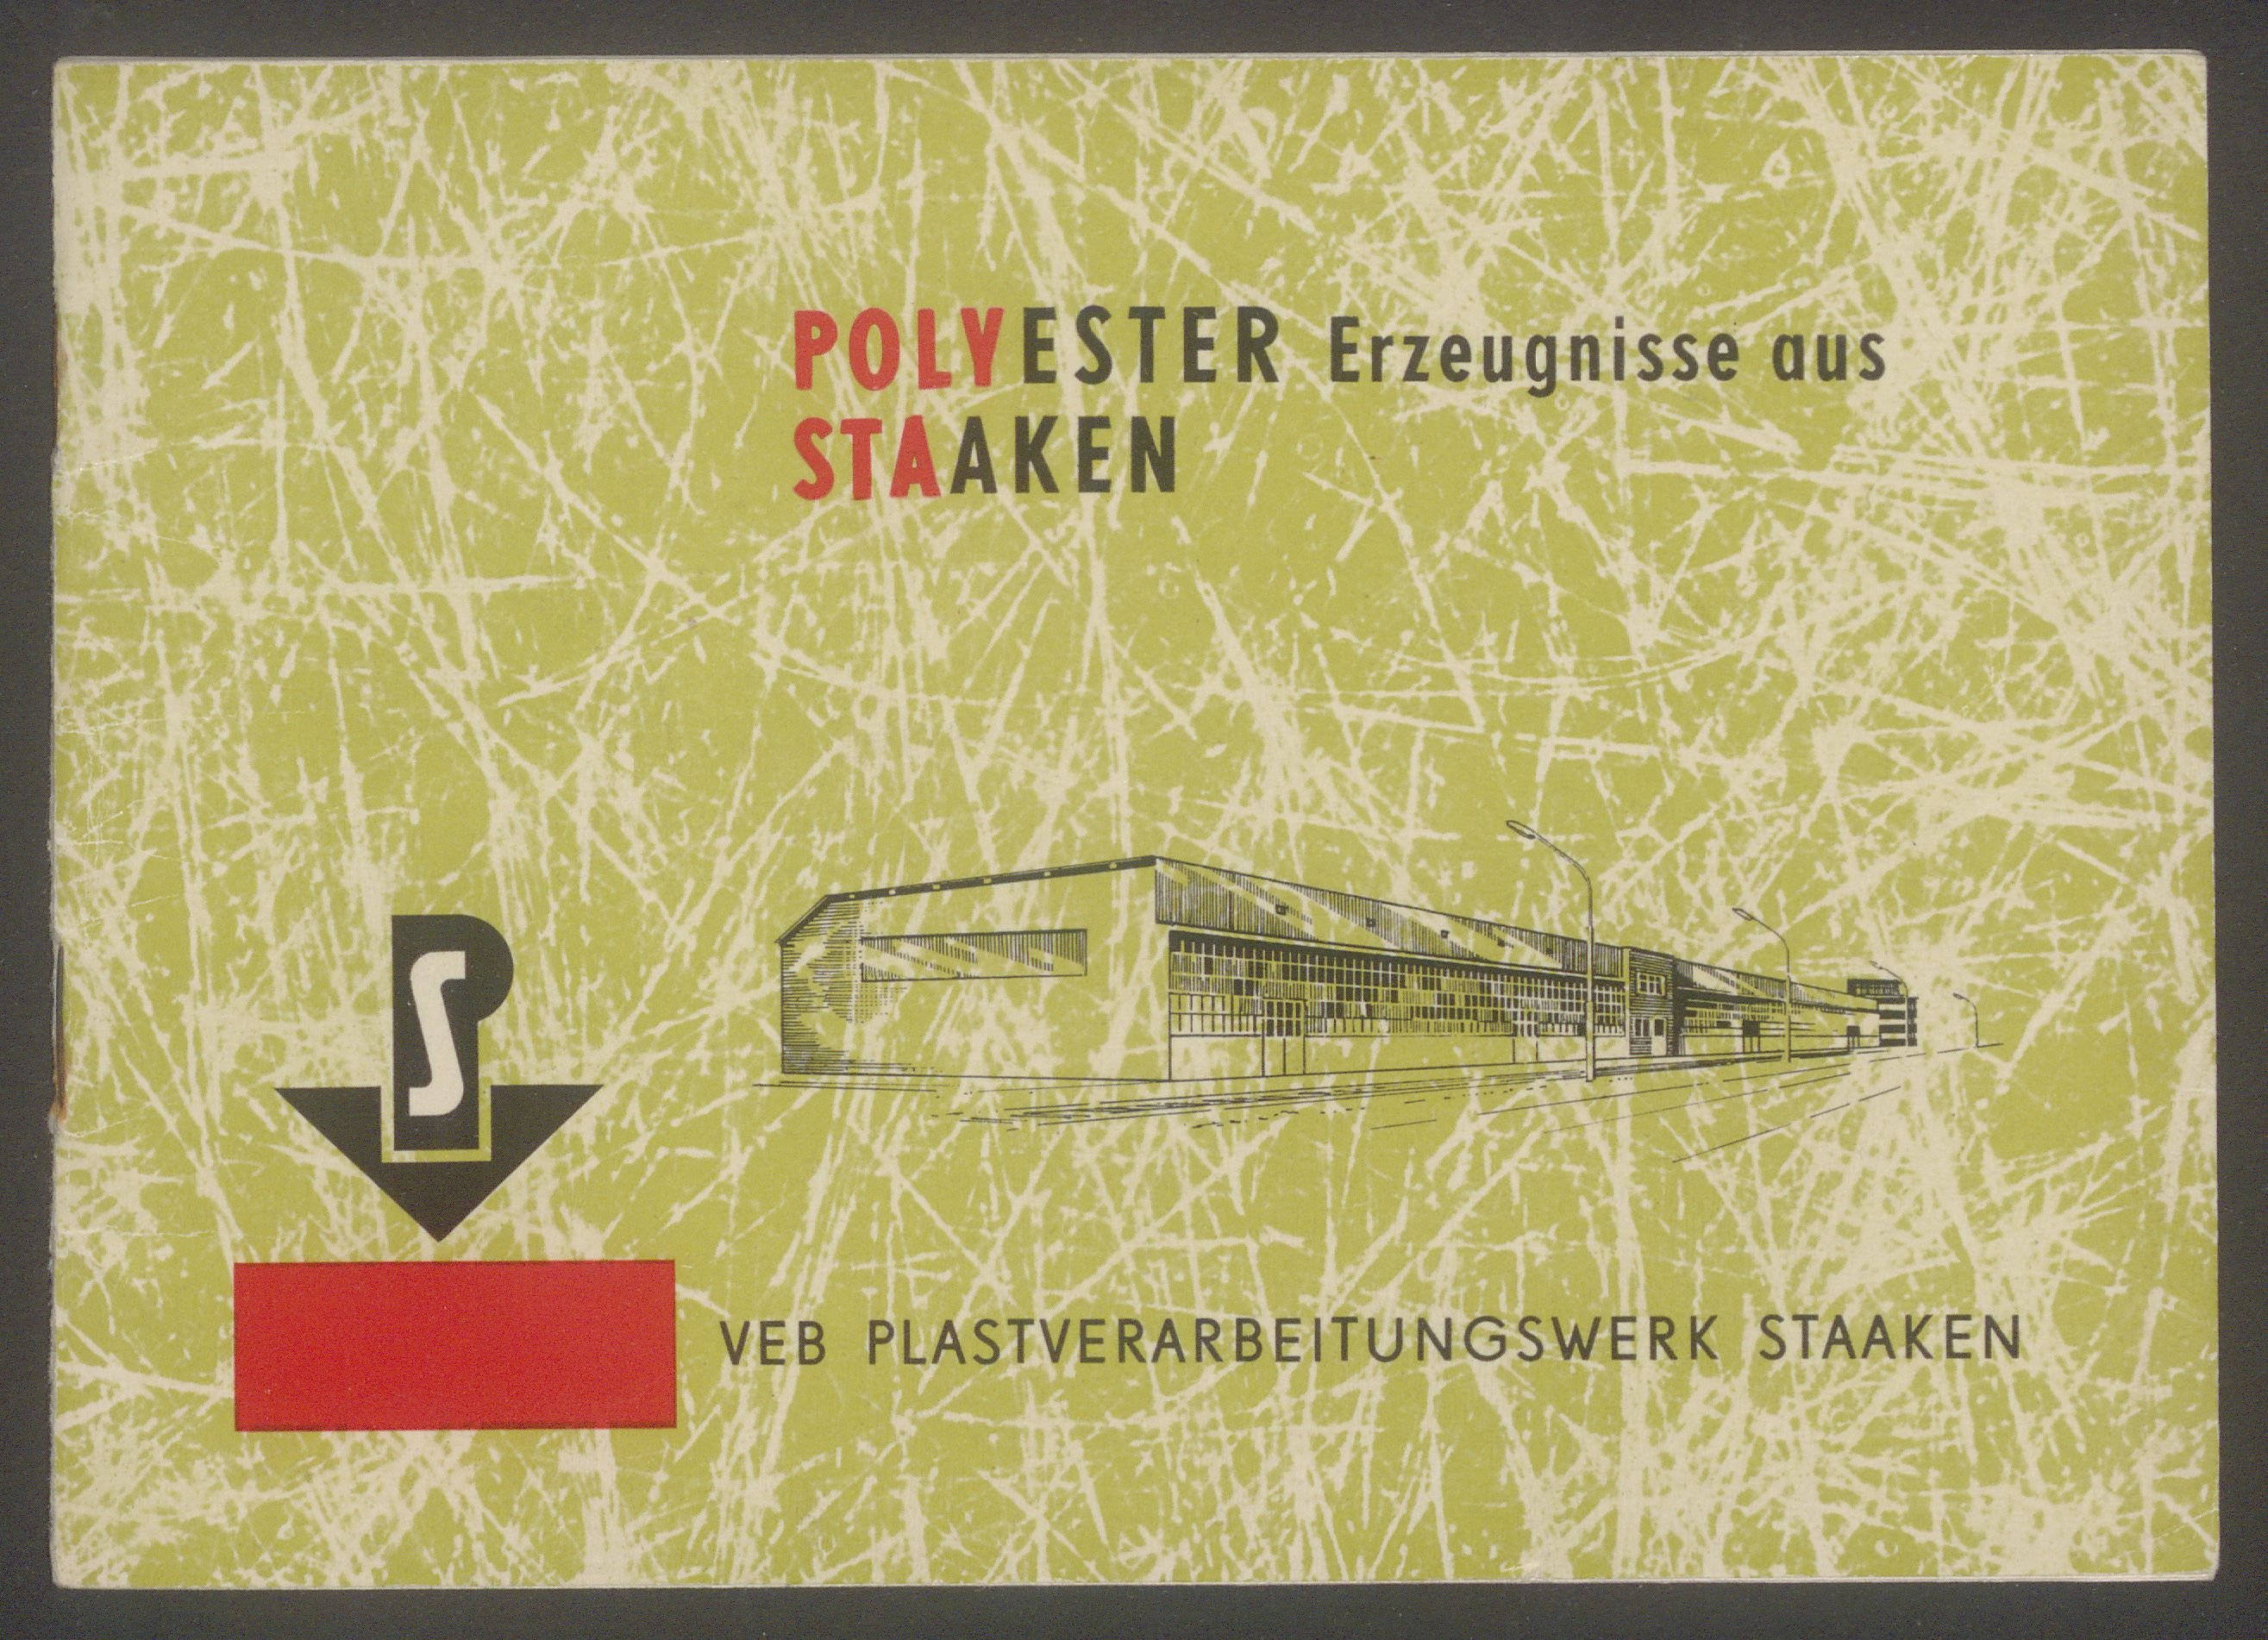 Produktkatalog "Polyester Erzeugnisse aus Staaken" (Museum und Galerie Falkensee CC BY-NC-SA)